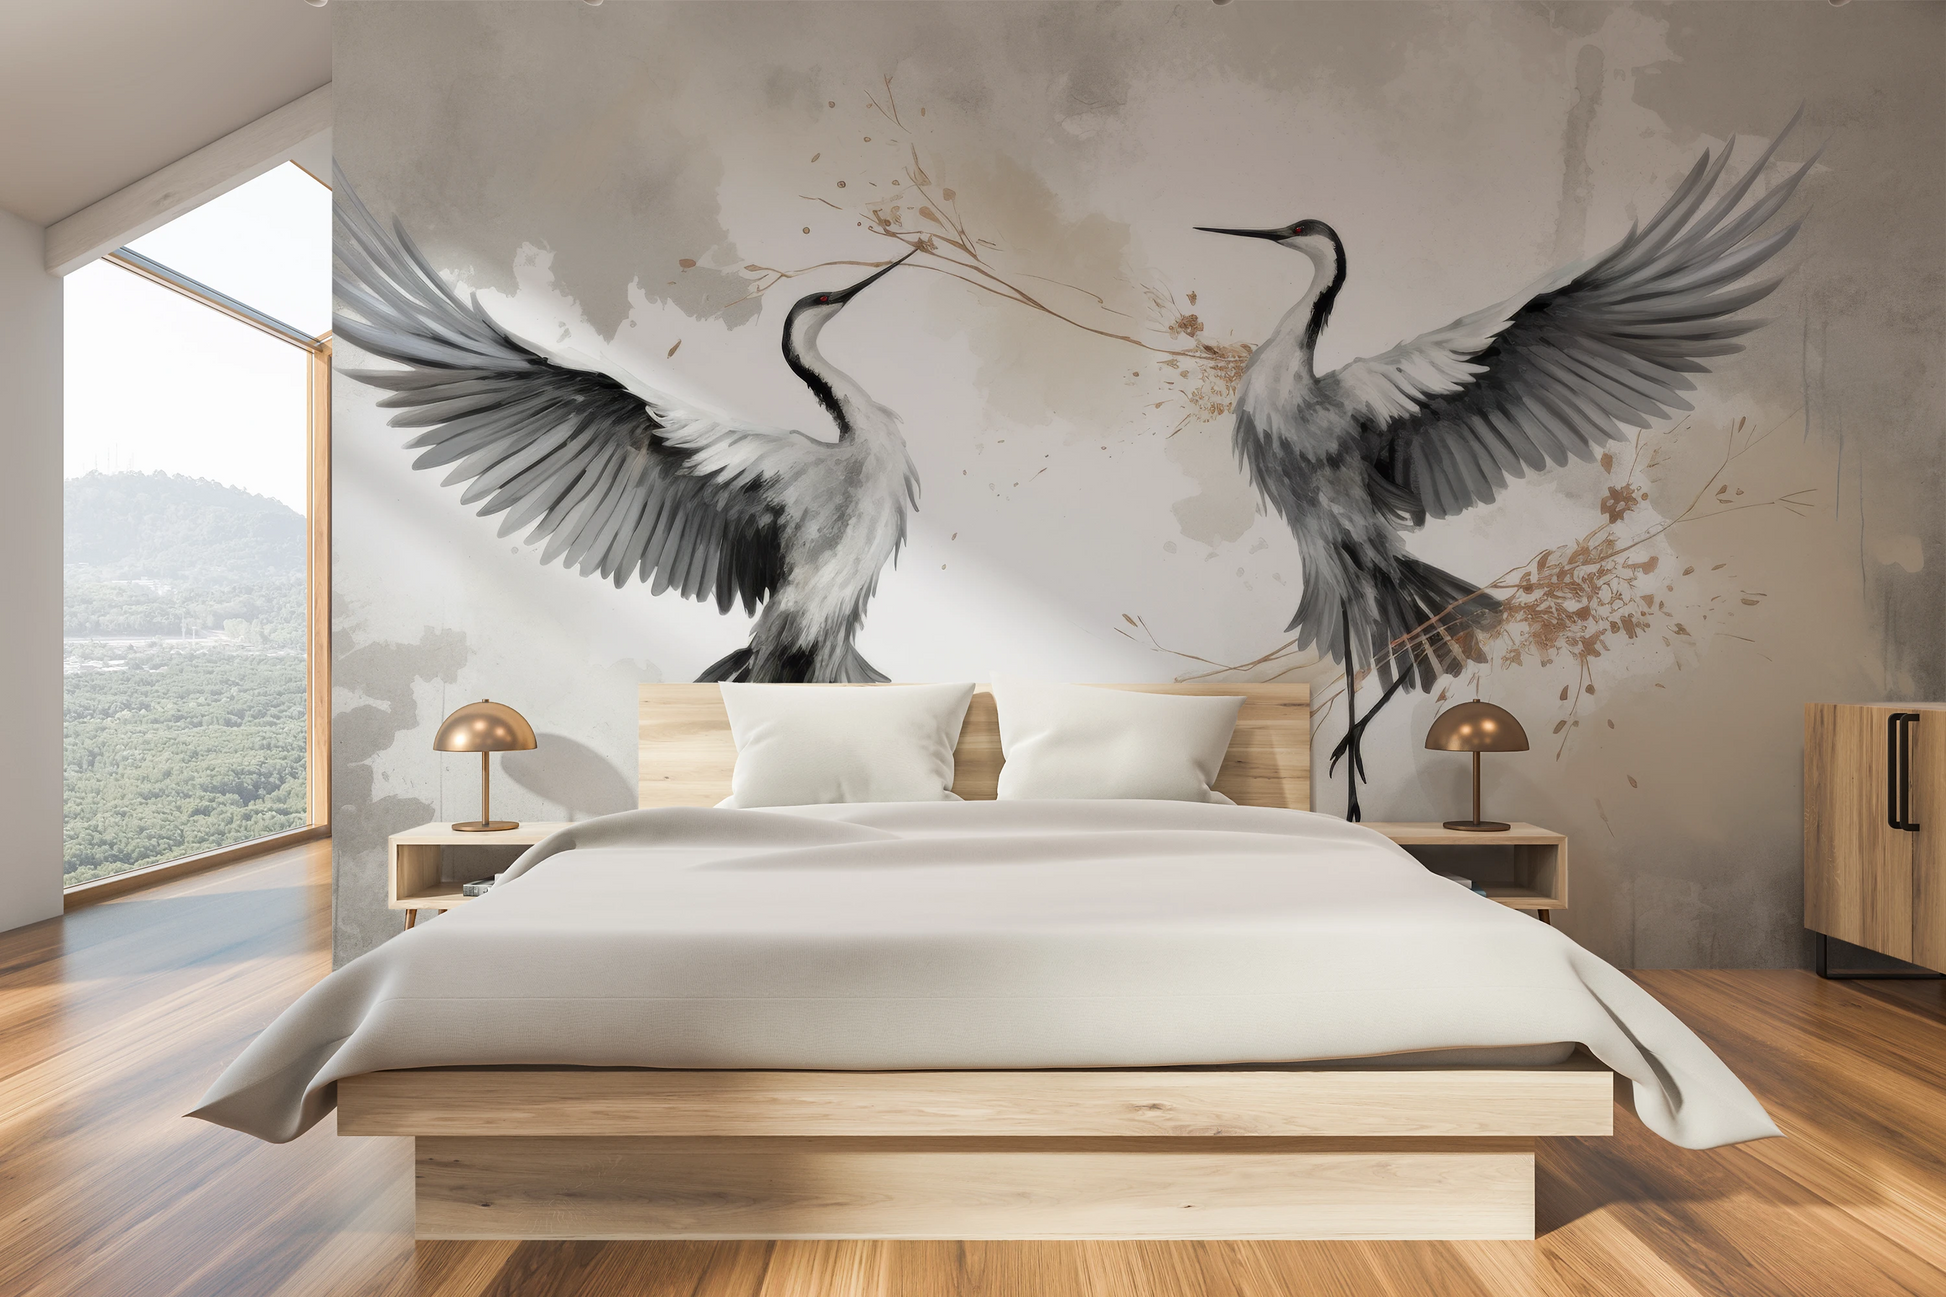 Fototapeta artystyczna o nazwie Wings of Freedom pokazana w aranżacji wnętrza.